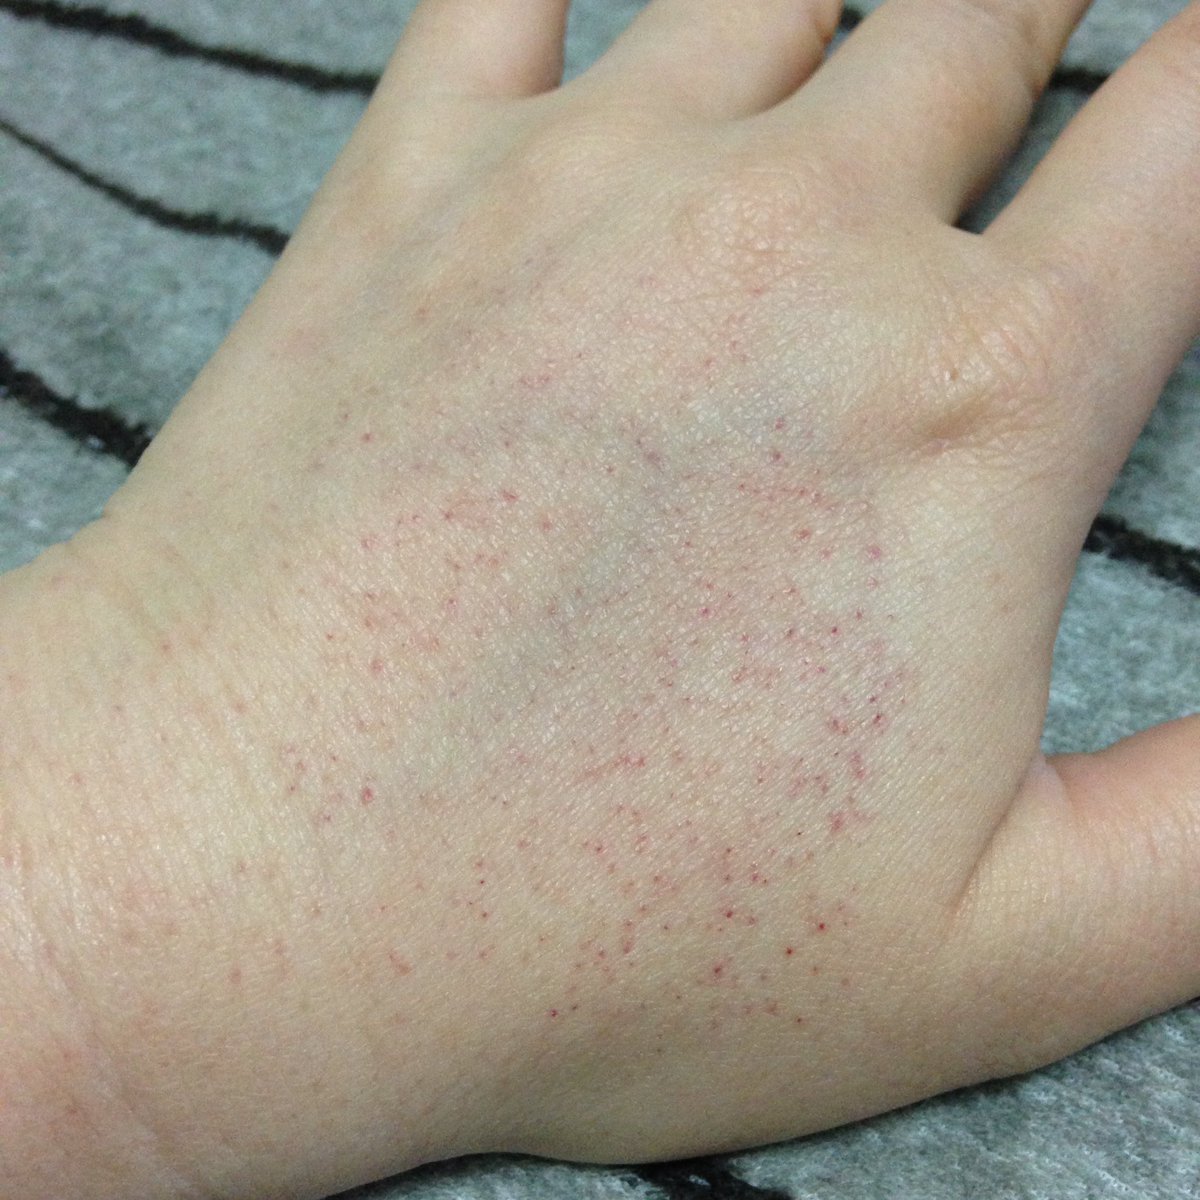 腕 に 赤い 斑点 痒く ない 足に赤い斑点で内出血があっても痒くない場合はどんな病気なの